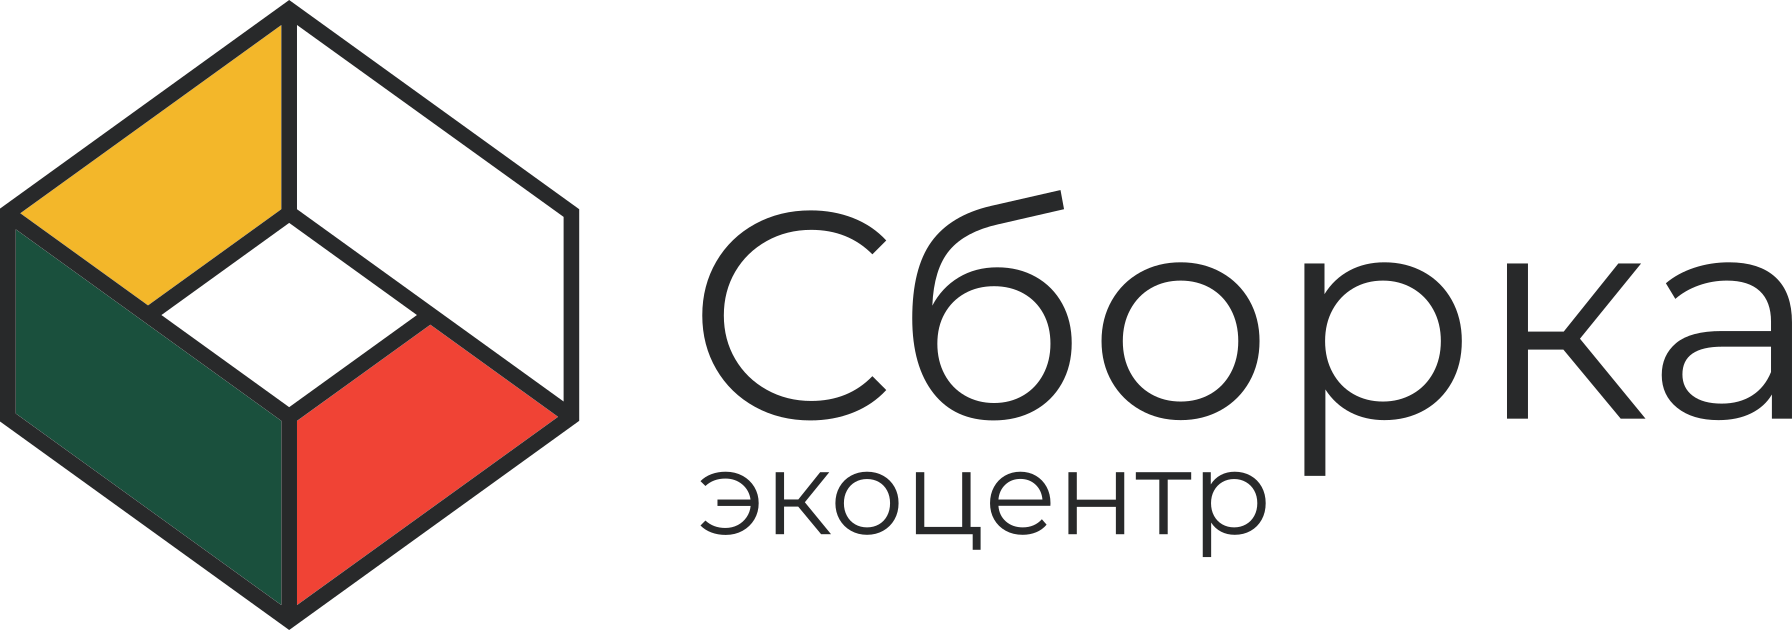 Сайт экоцентра калининград. Экоцентр сборка. Экоцентр сборка Москва. Экосборка логотип. Экоцентр сборка логотип.